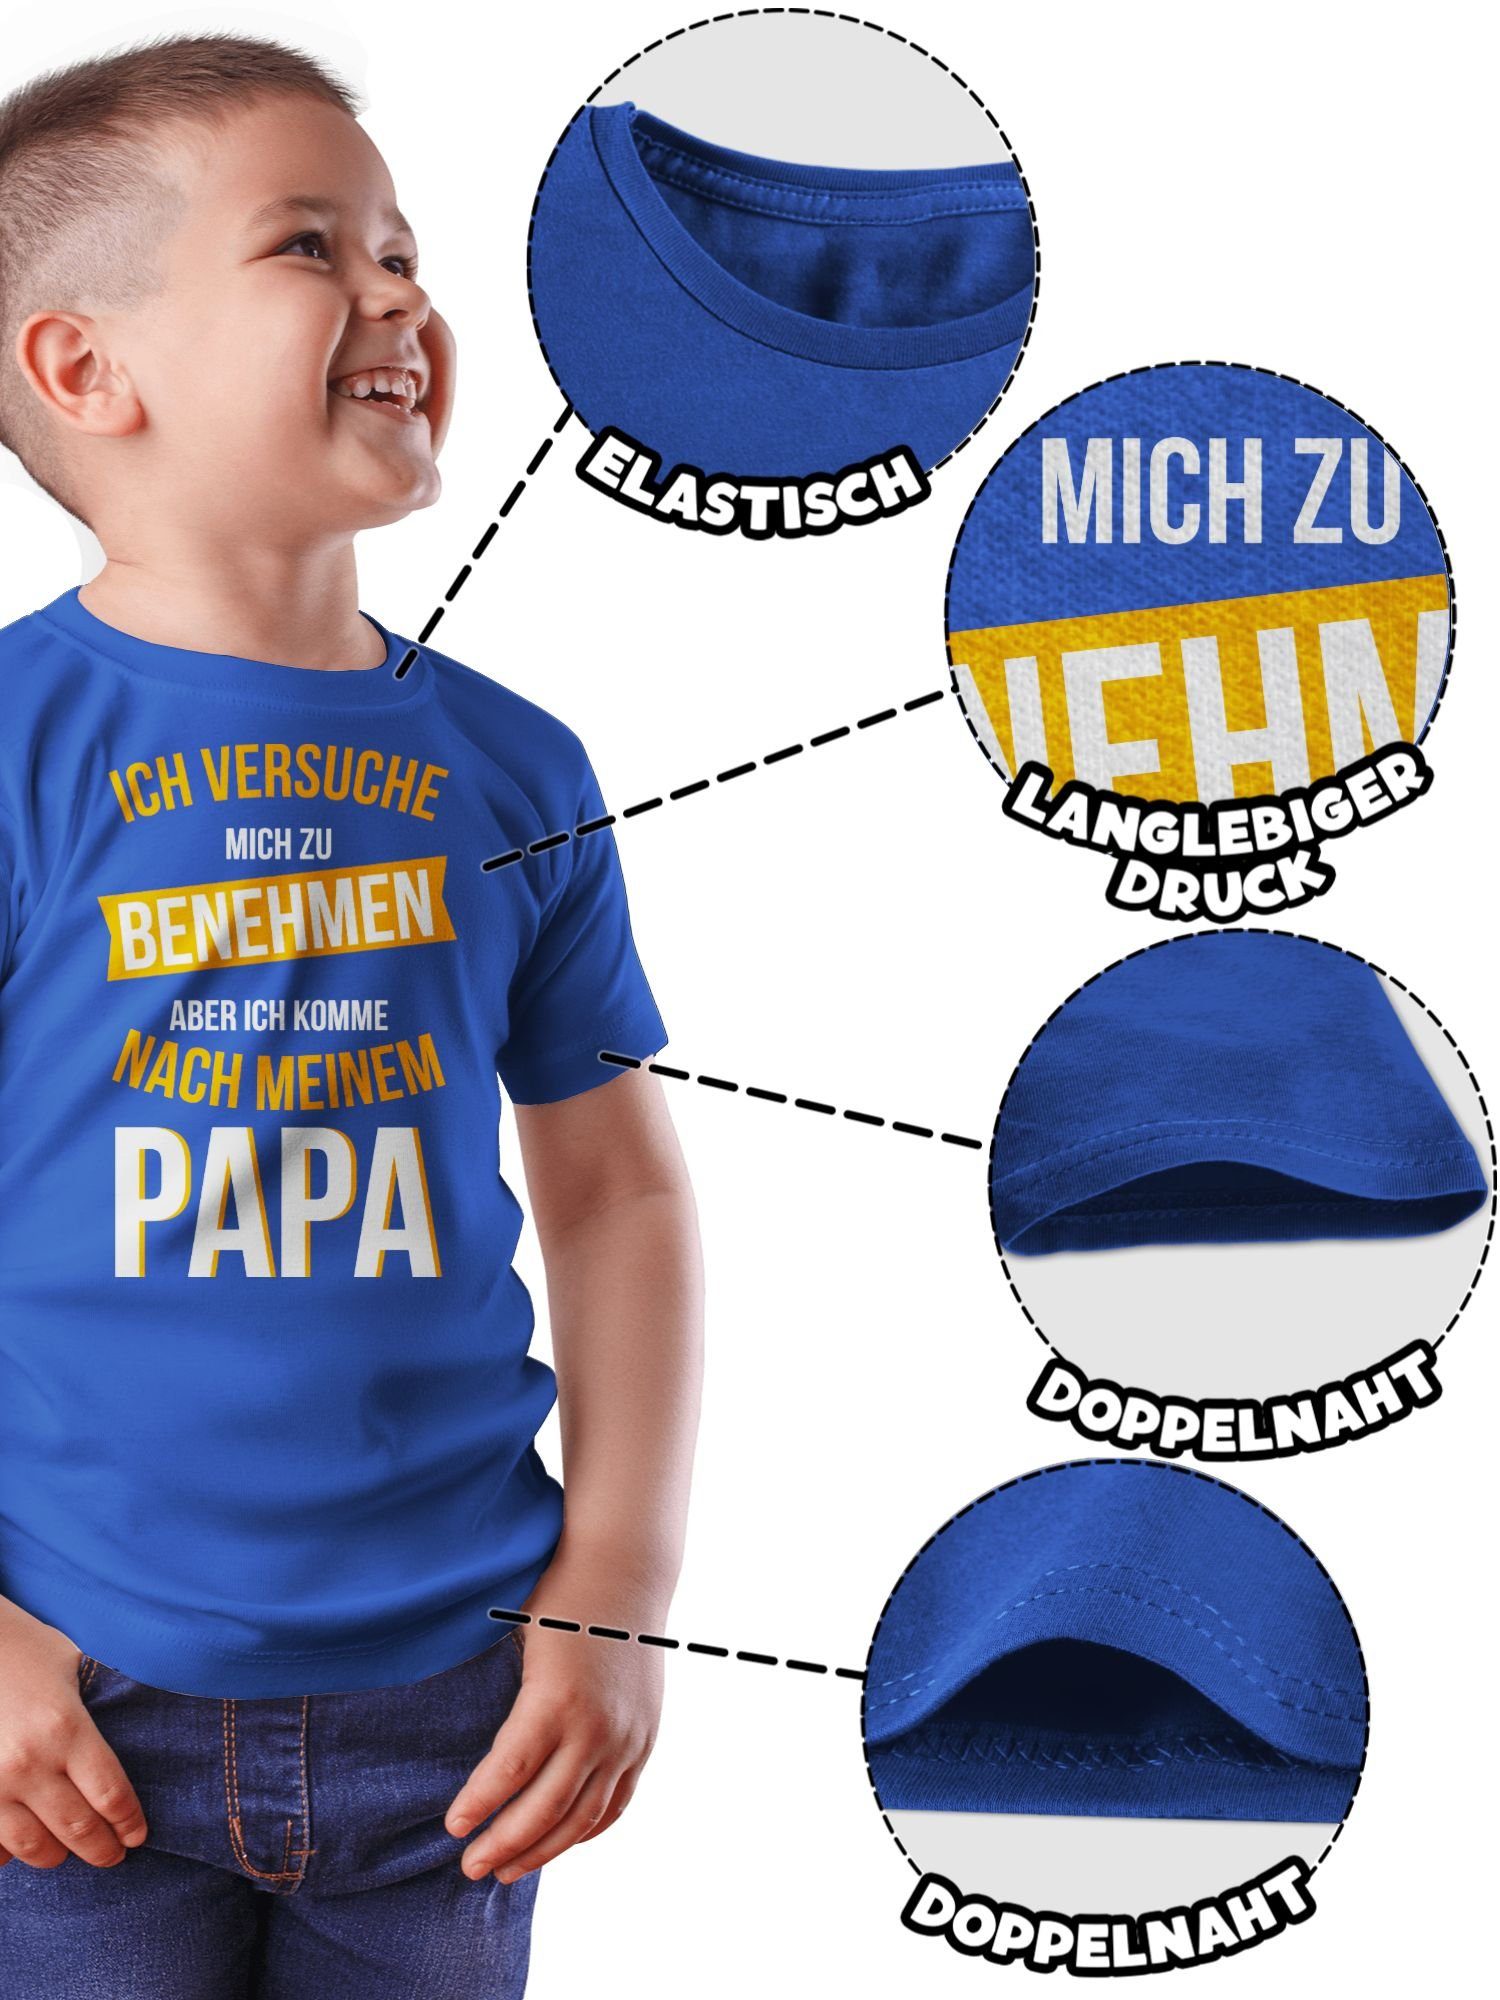 Shirtracer T-Shirt Versuche mich zu nach 2 komme Papa Royalblau benehmen Sprüche Kinder Statement